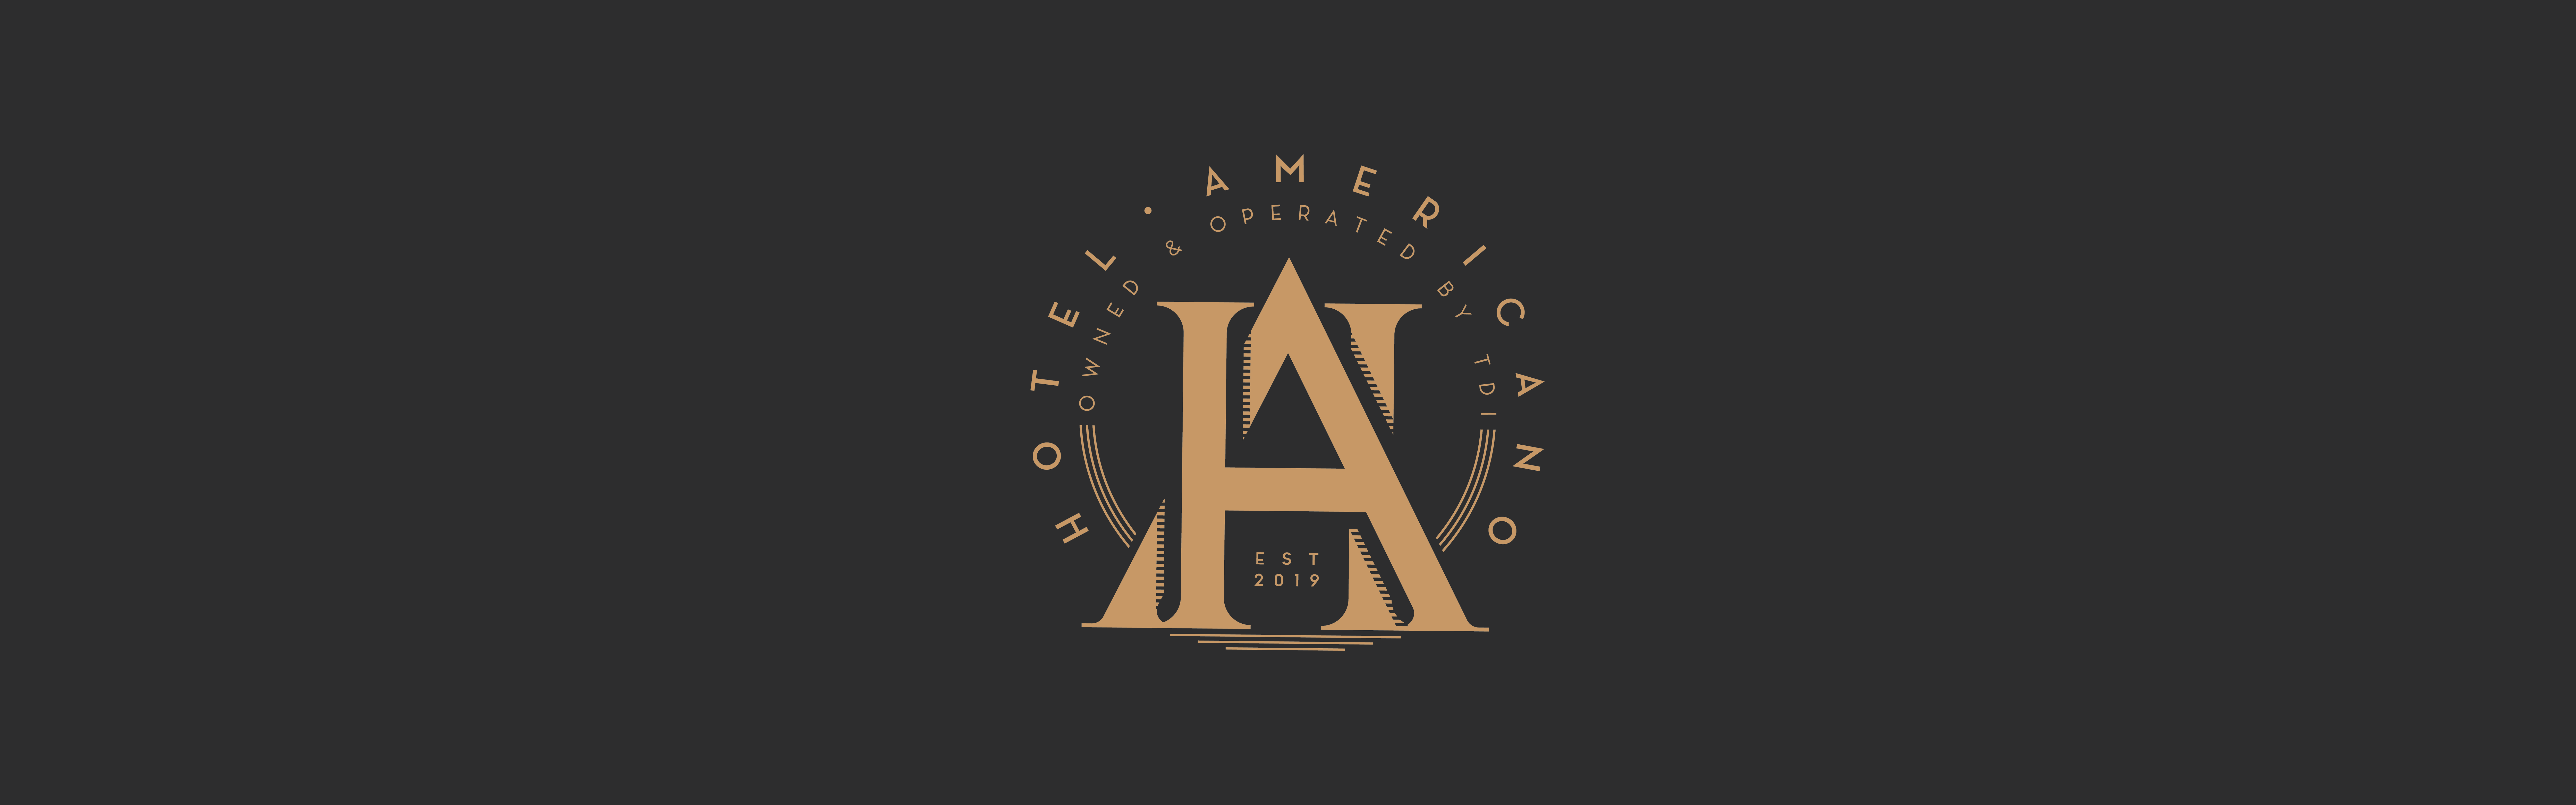 Hotel Americano | Daor Design